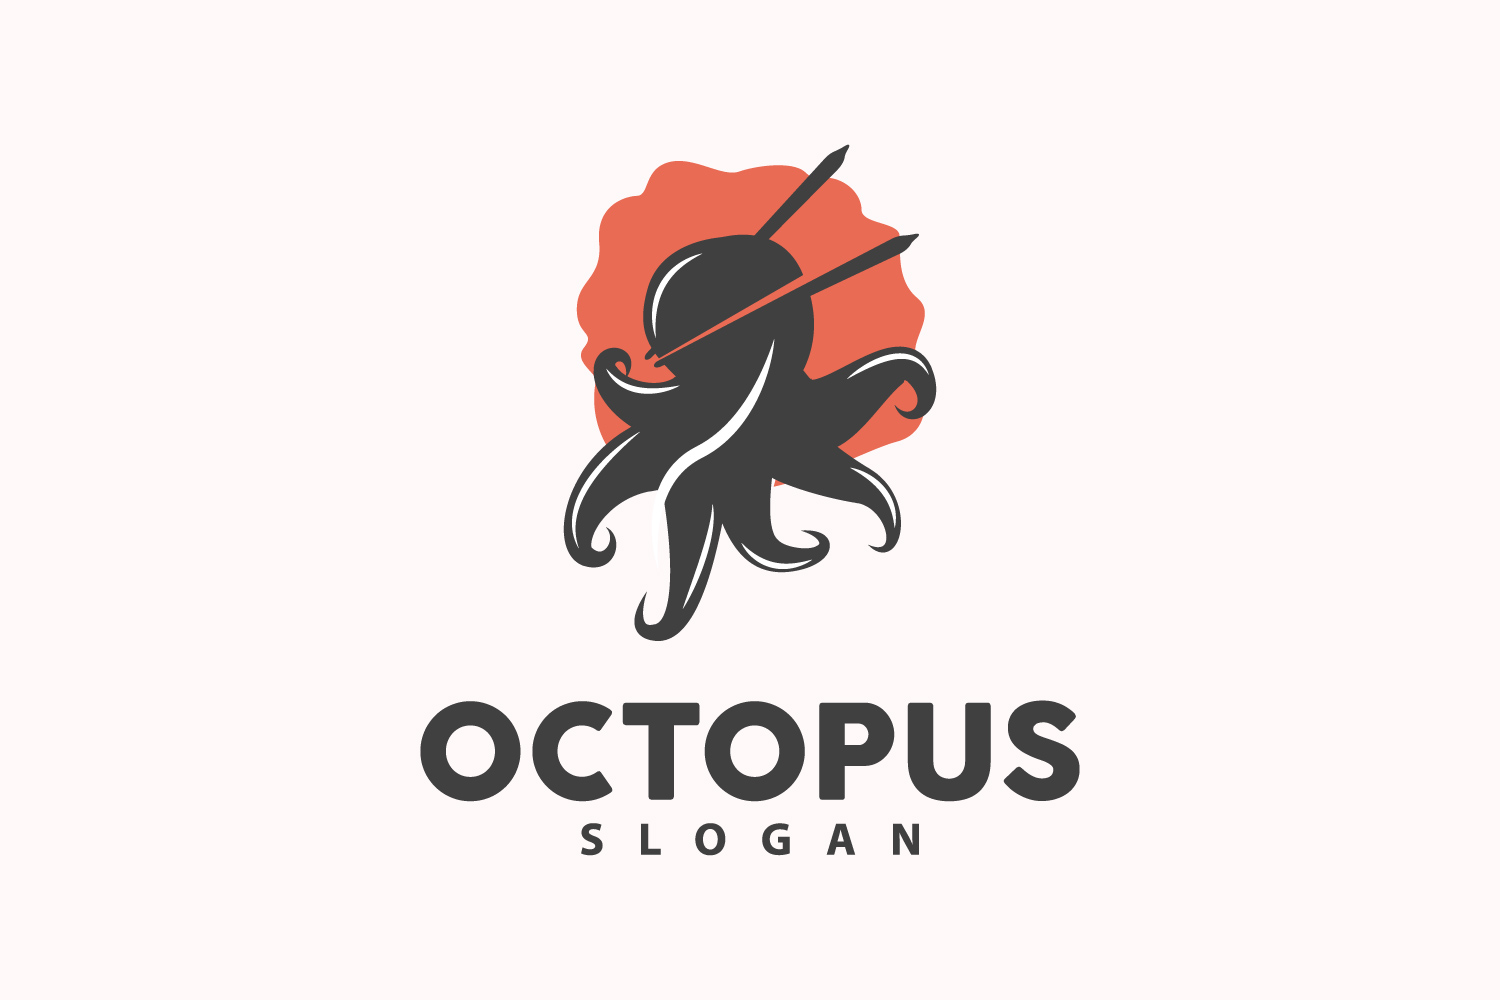 Octopus Logo Old Retro Vintage DesignV14